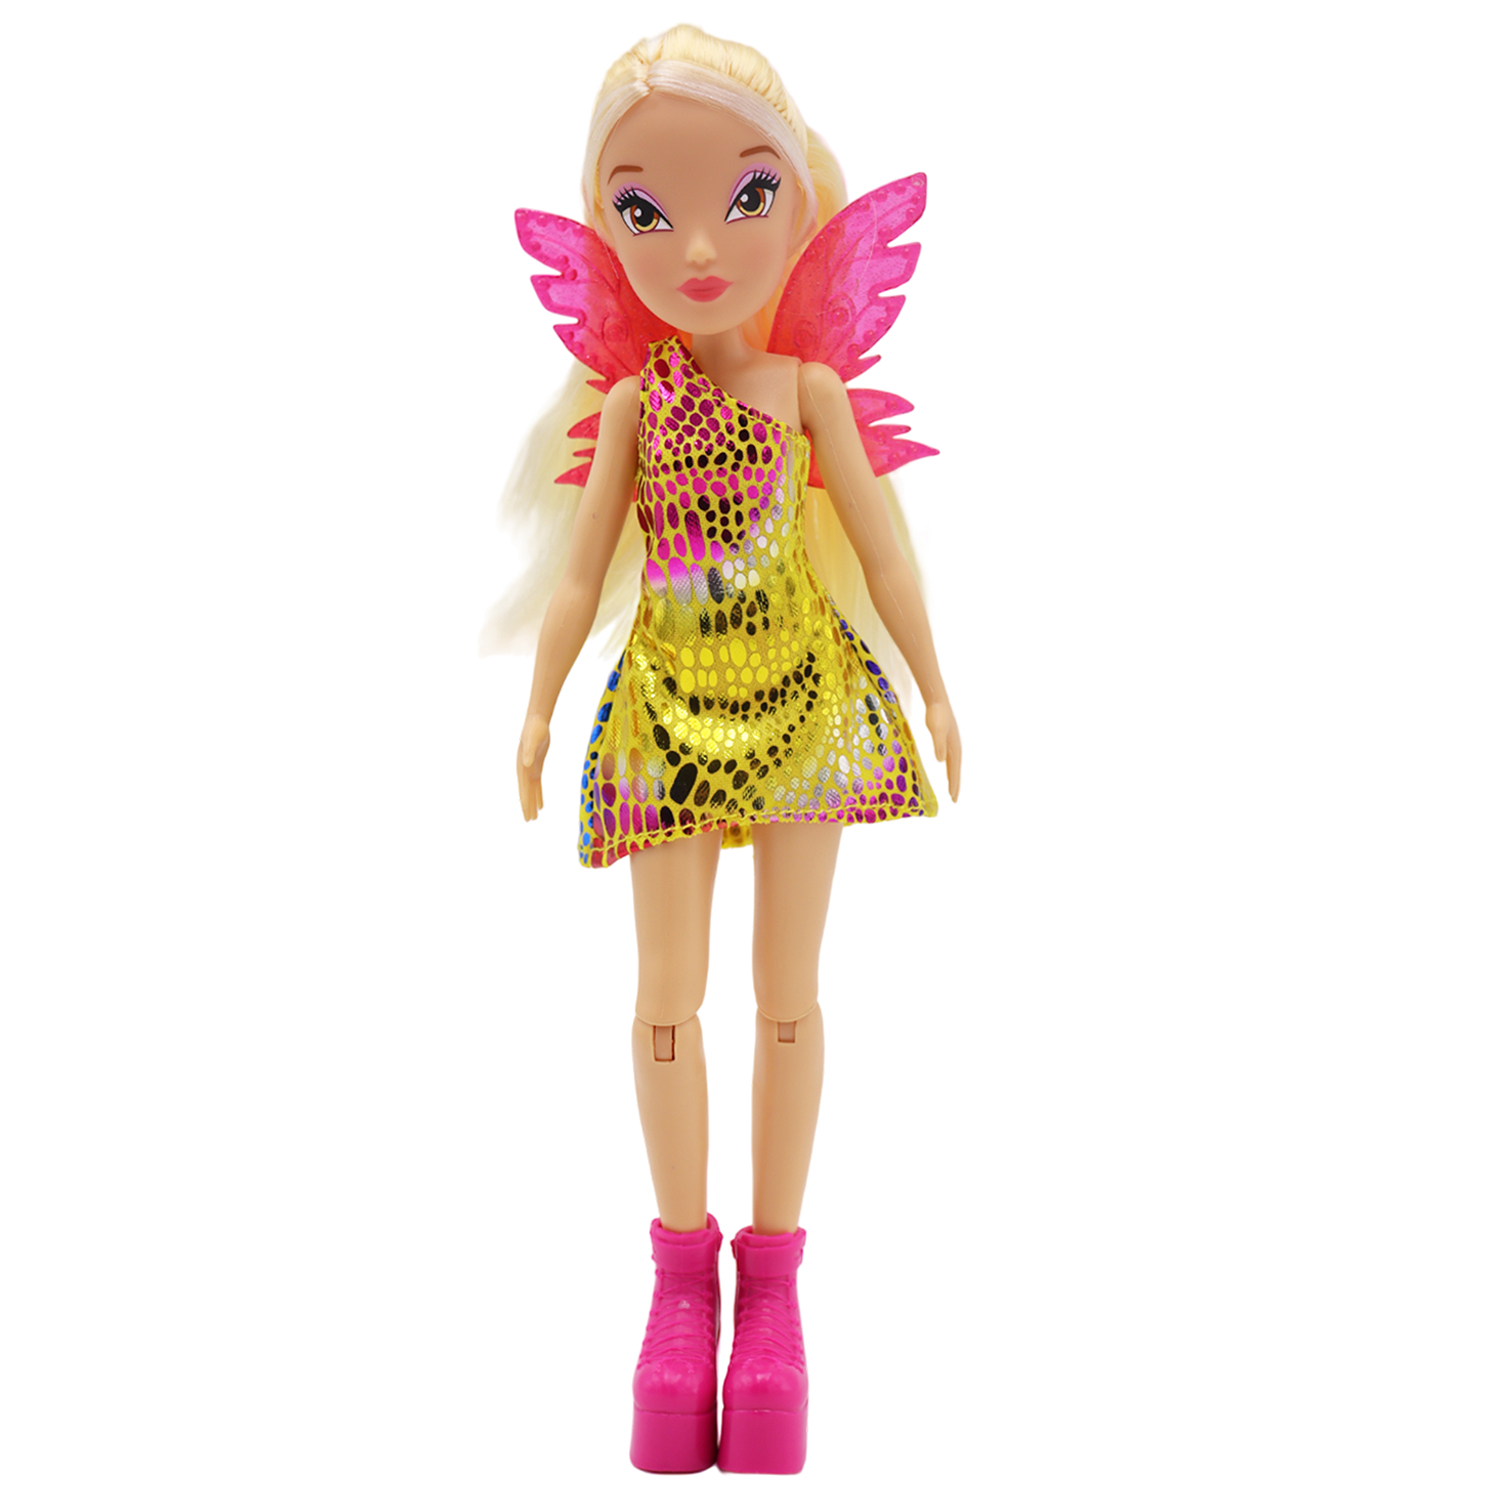 Кукла шарнирная Winx Club Стелла с крыльями, 24 см, IW01552303 кукла шарнирная winx club модная стелла с крыльями 24 см iw01242103